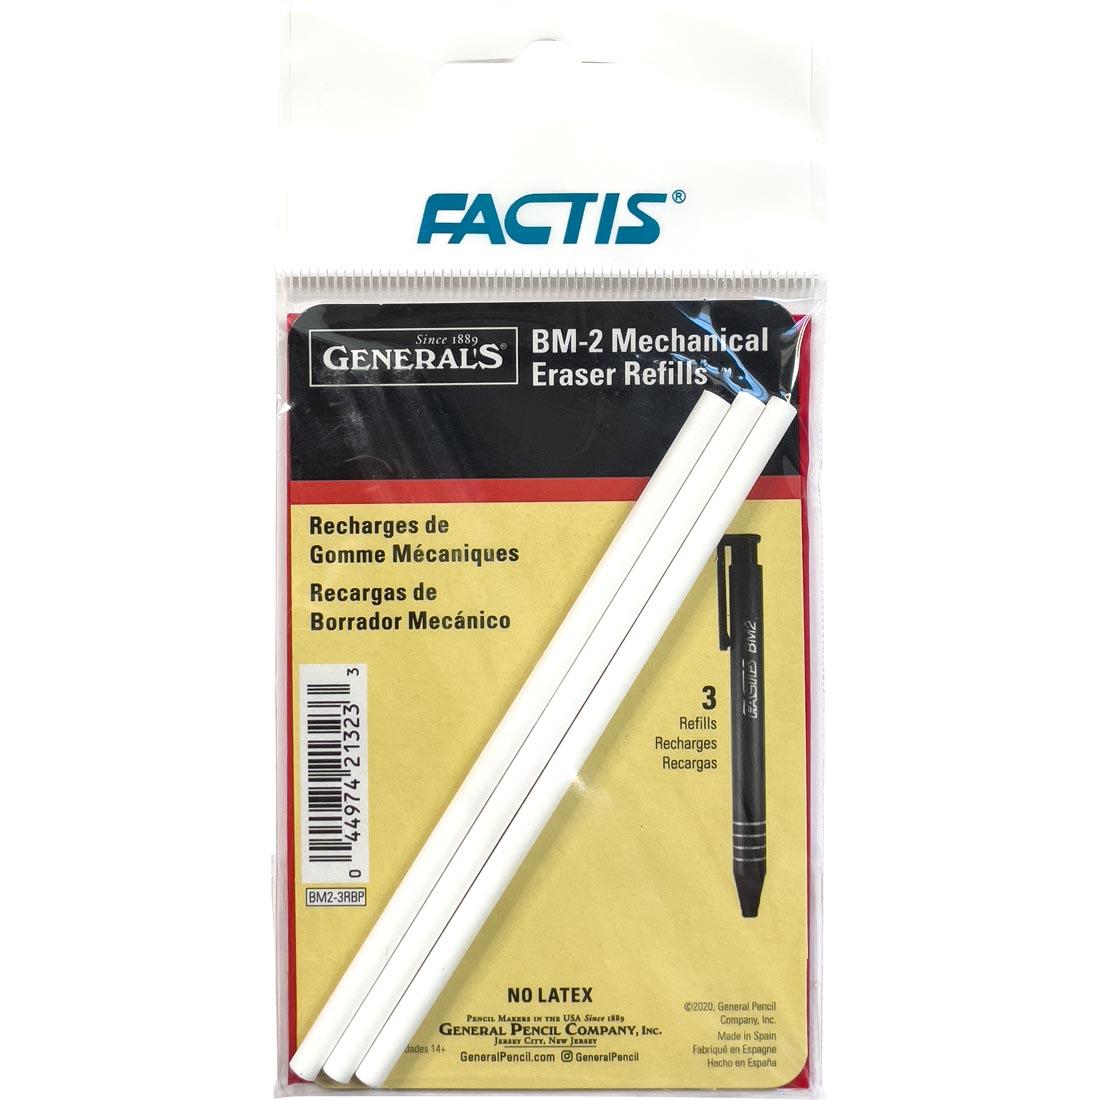 General's Factis BM-2 Mechanical Eraser Refill 3-Pack